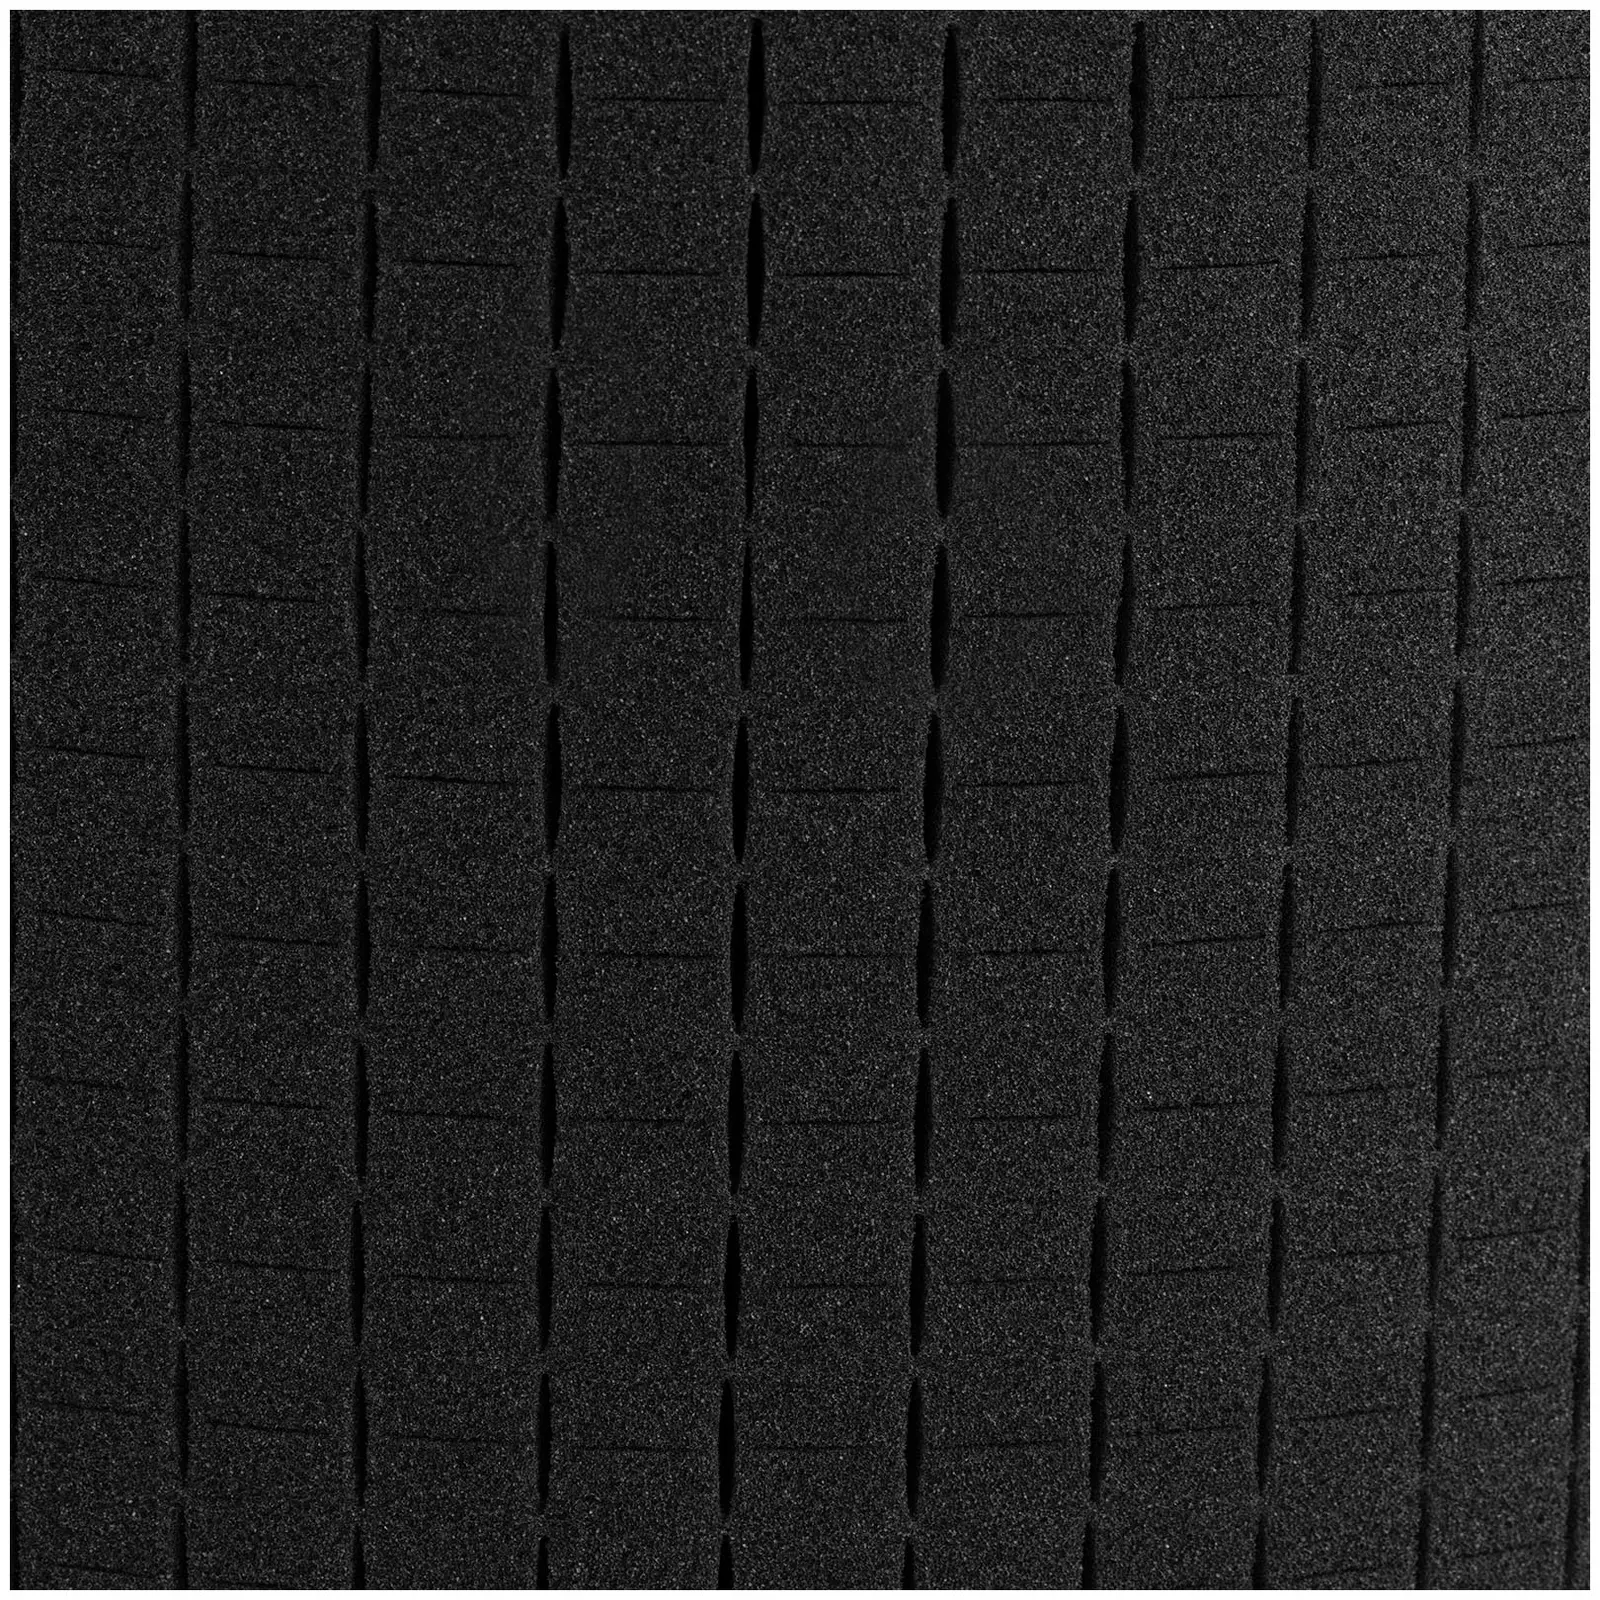 Fotofodral - vattentät - 2 l - svart - 21.5 x 14.5 x 8.5 cm